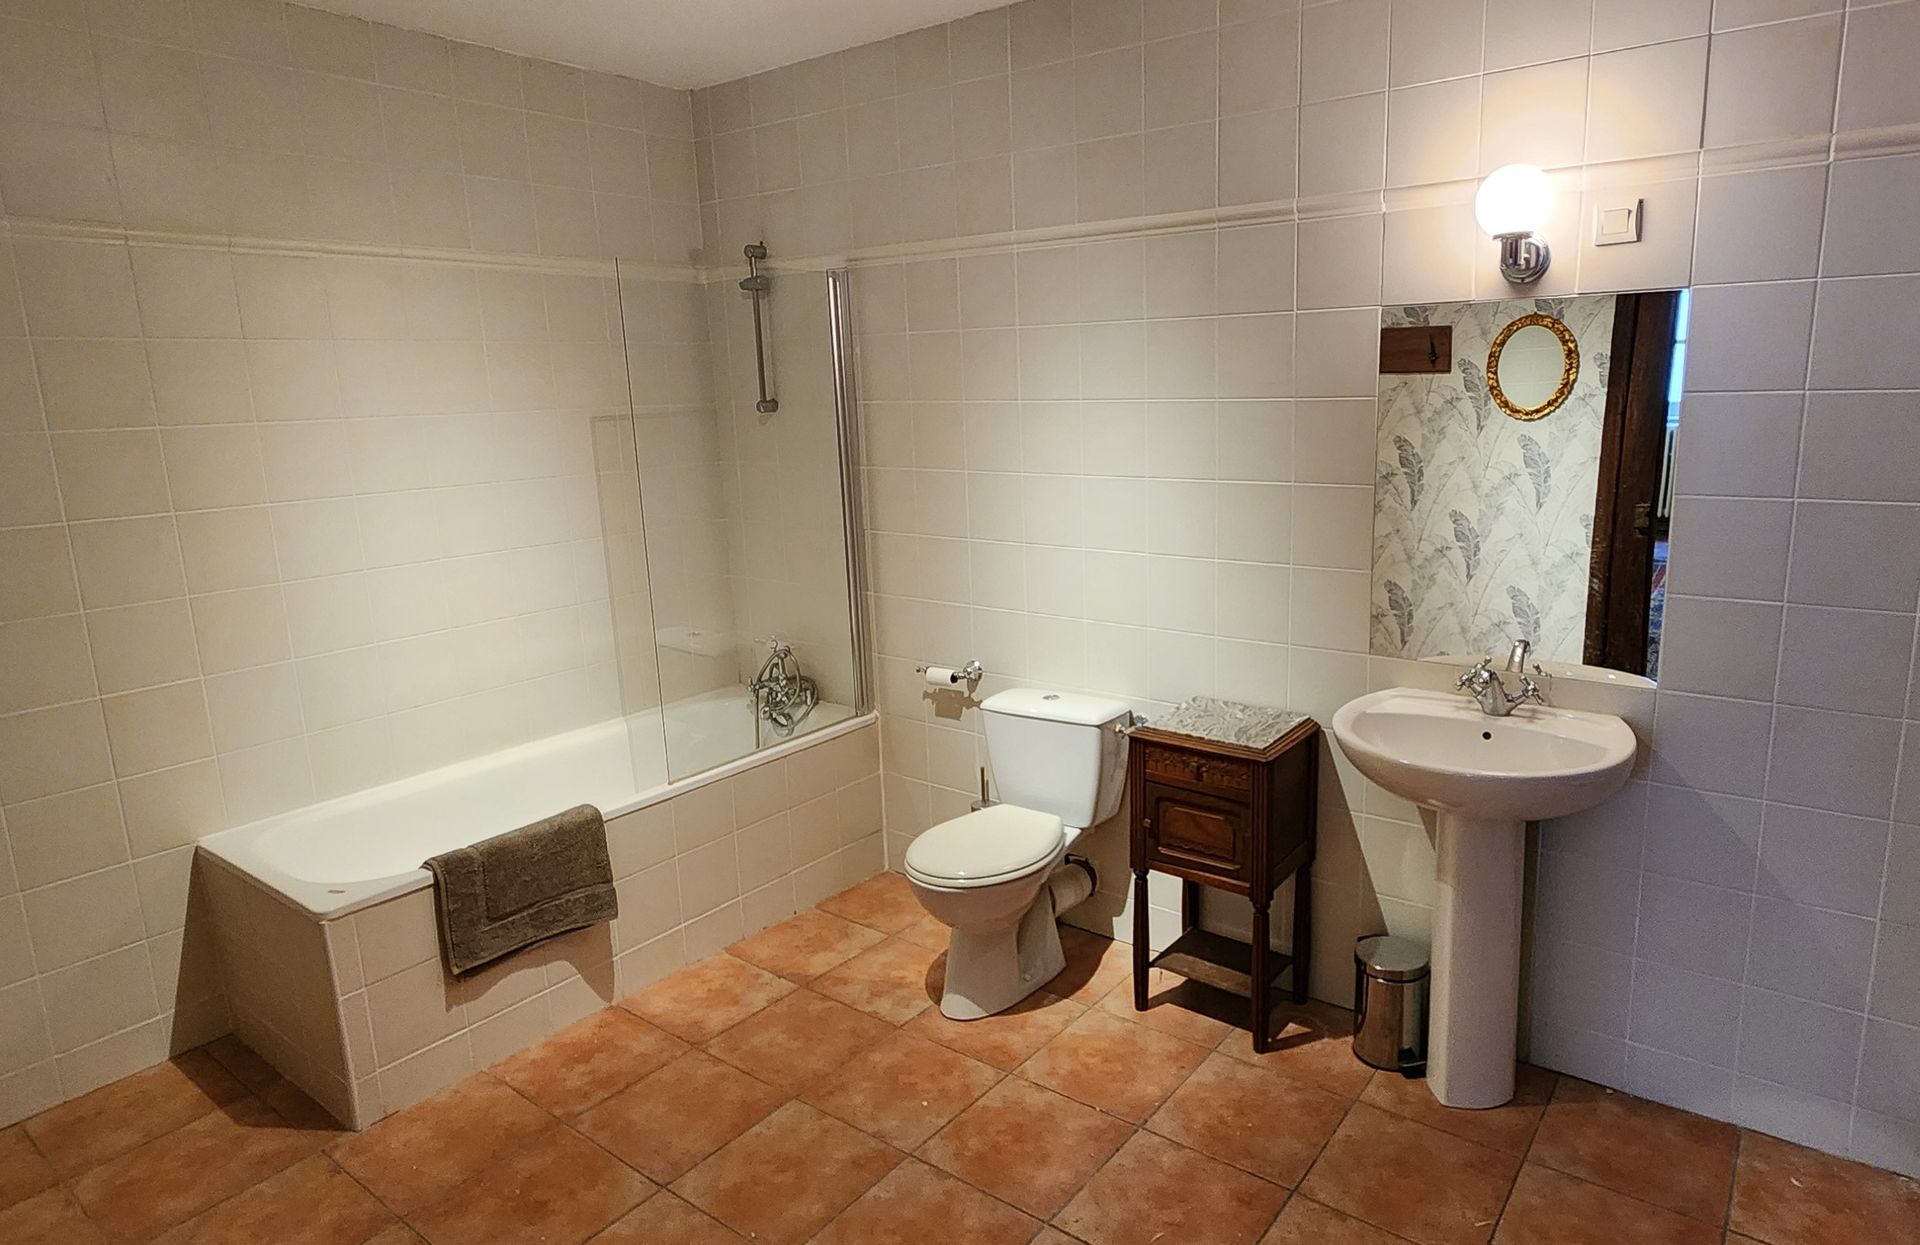 a bathroom with a sink , toilet , bathtub and mirror .